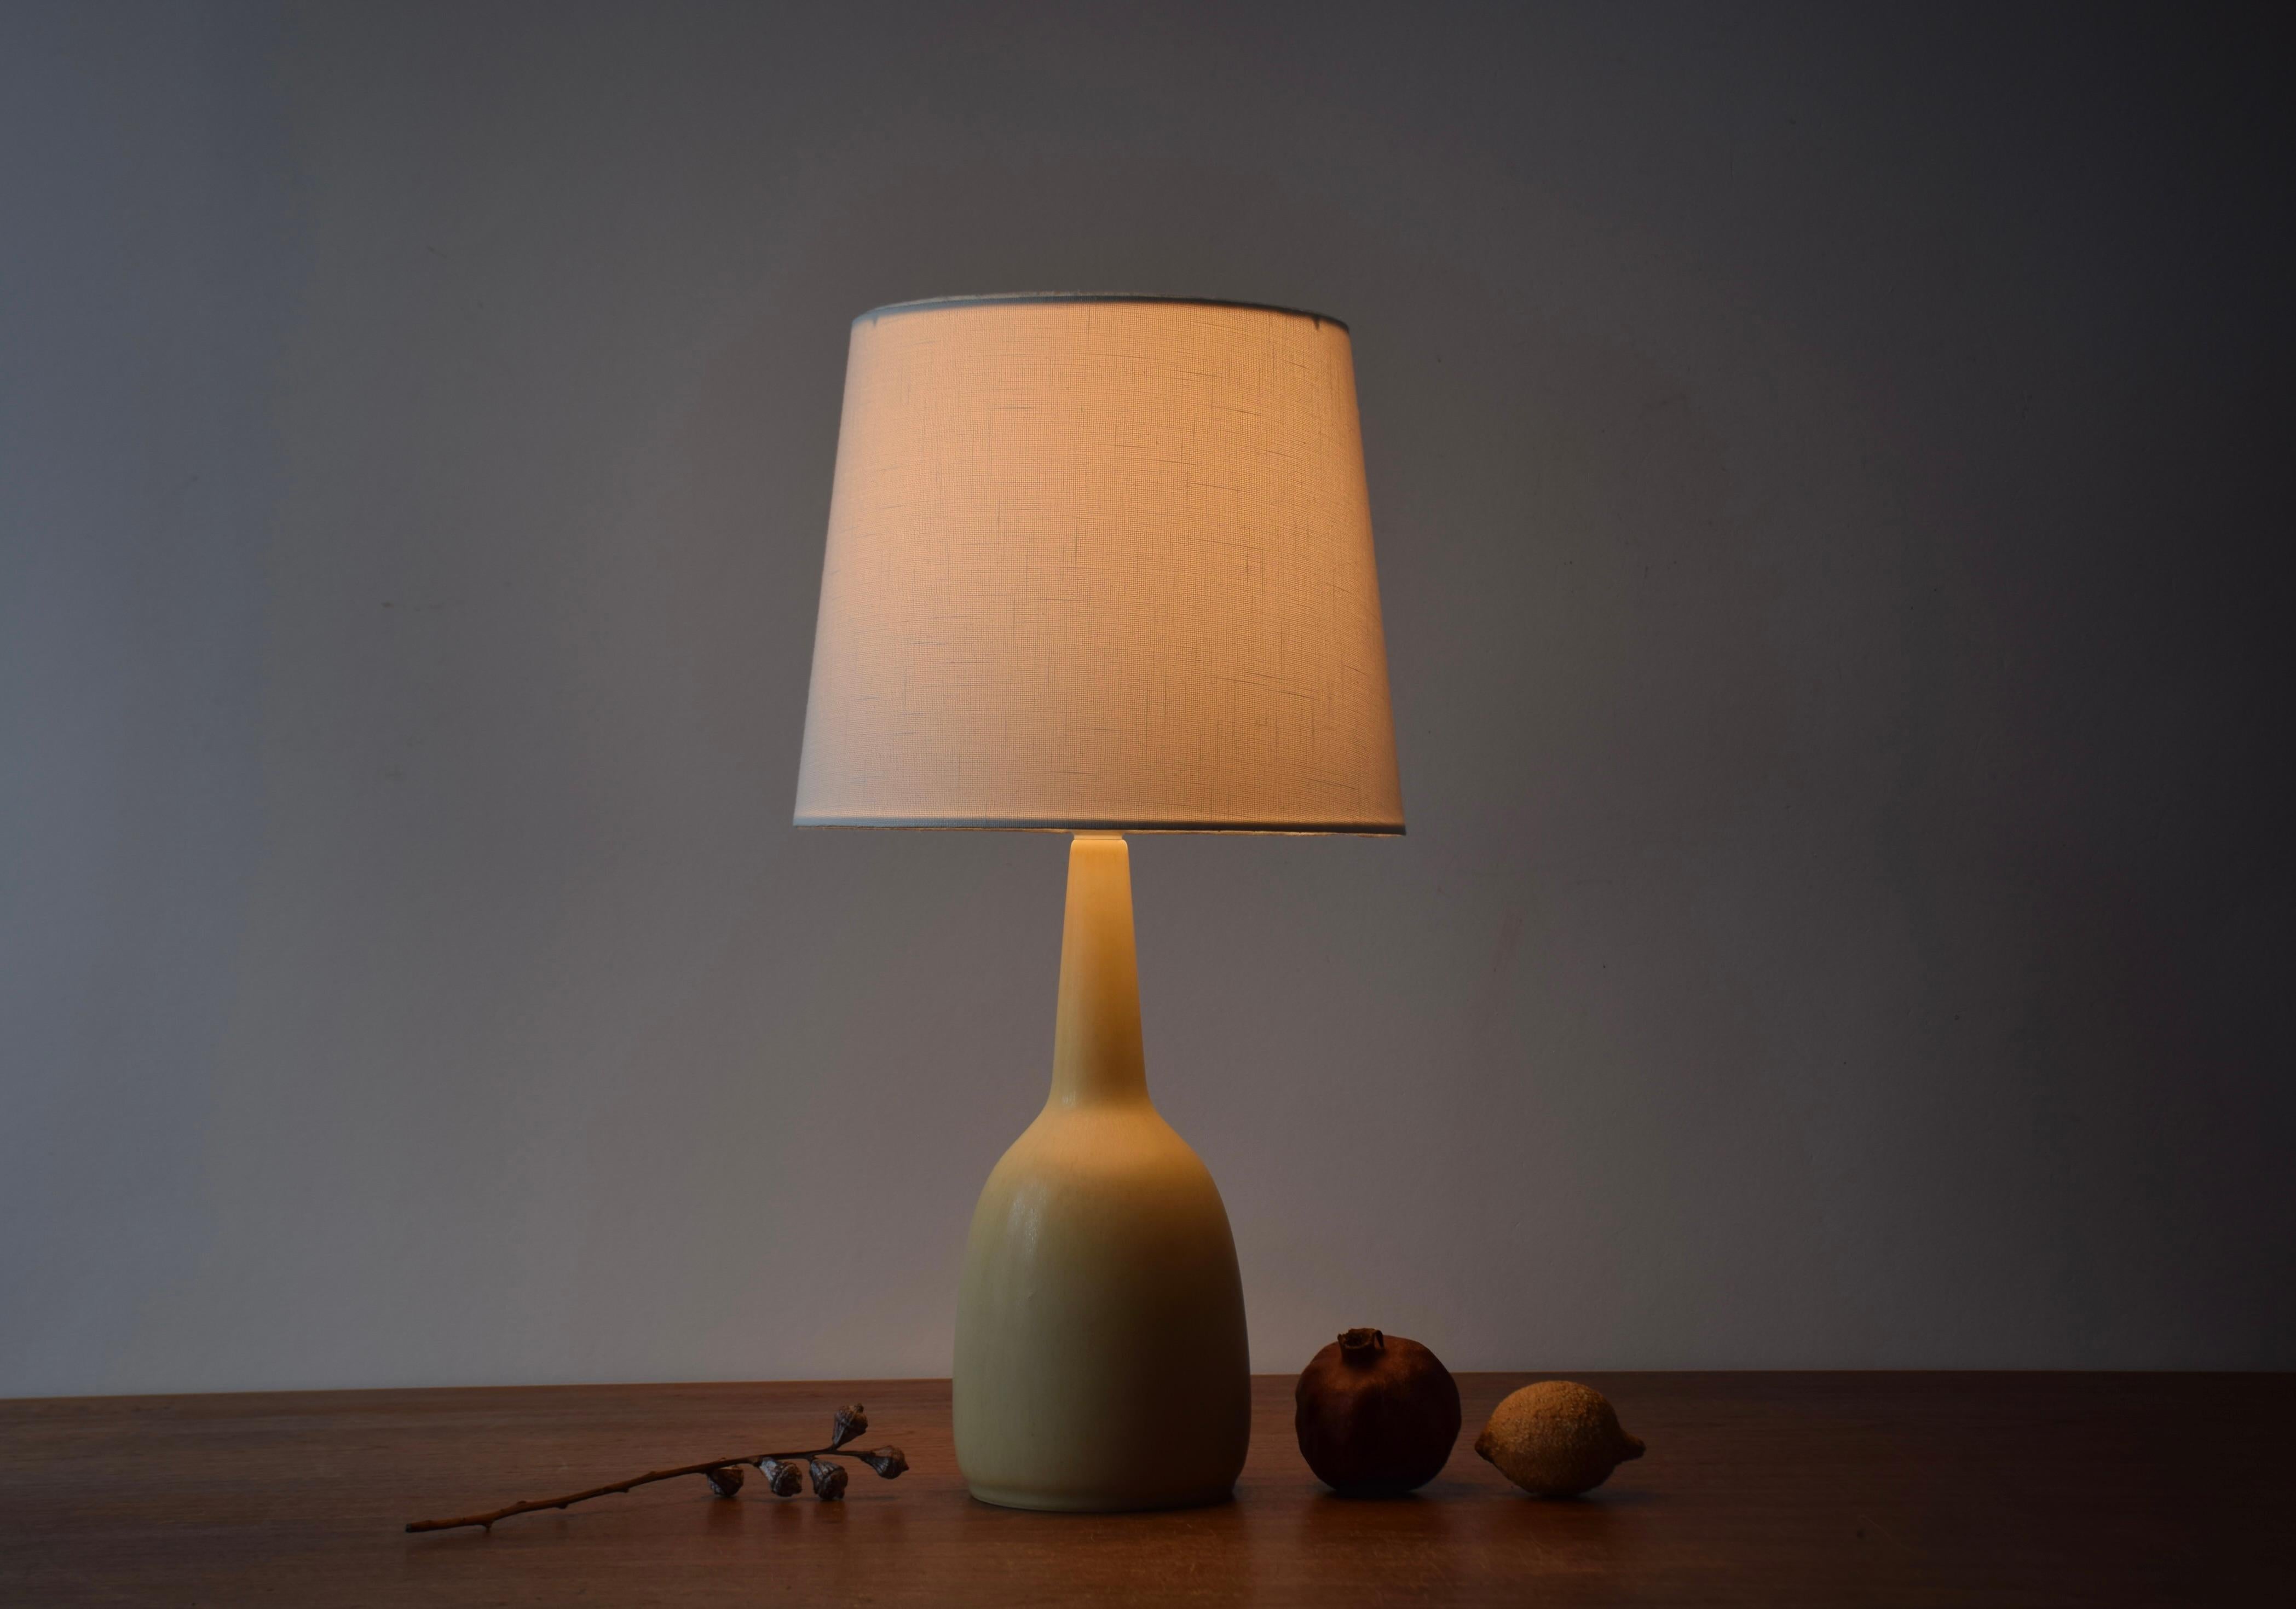 Lampe de table du milieu du siècle de la marque danoise HaresFus avec glaçure jaune pâle haresfur.
La lampe a été conçue par Per Linnemann-Schmidt et produite vers les années 1950.

Un nouvel abat-jour conçu au Danemark est inclus. Ils sont